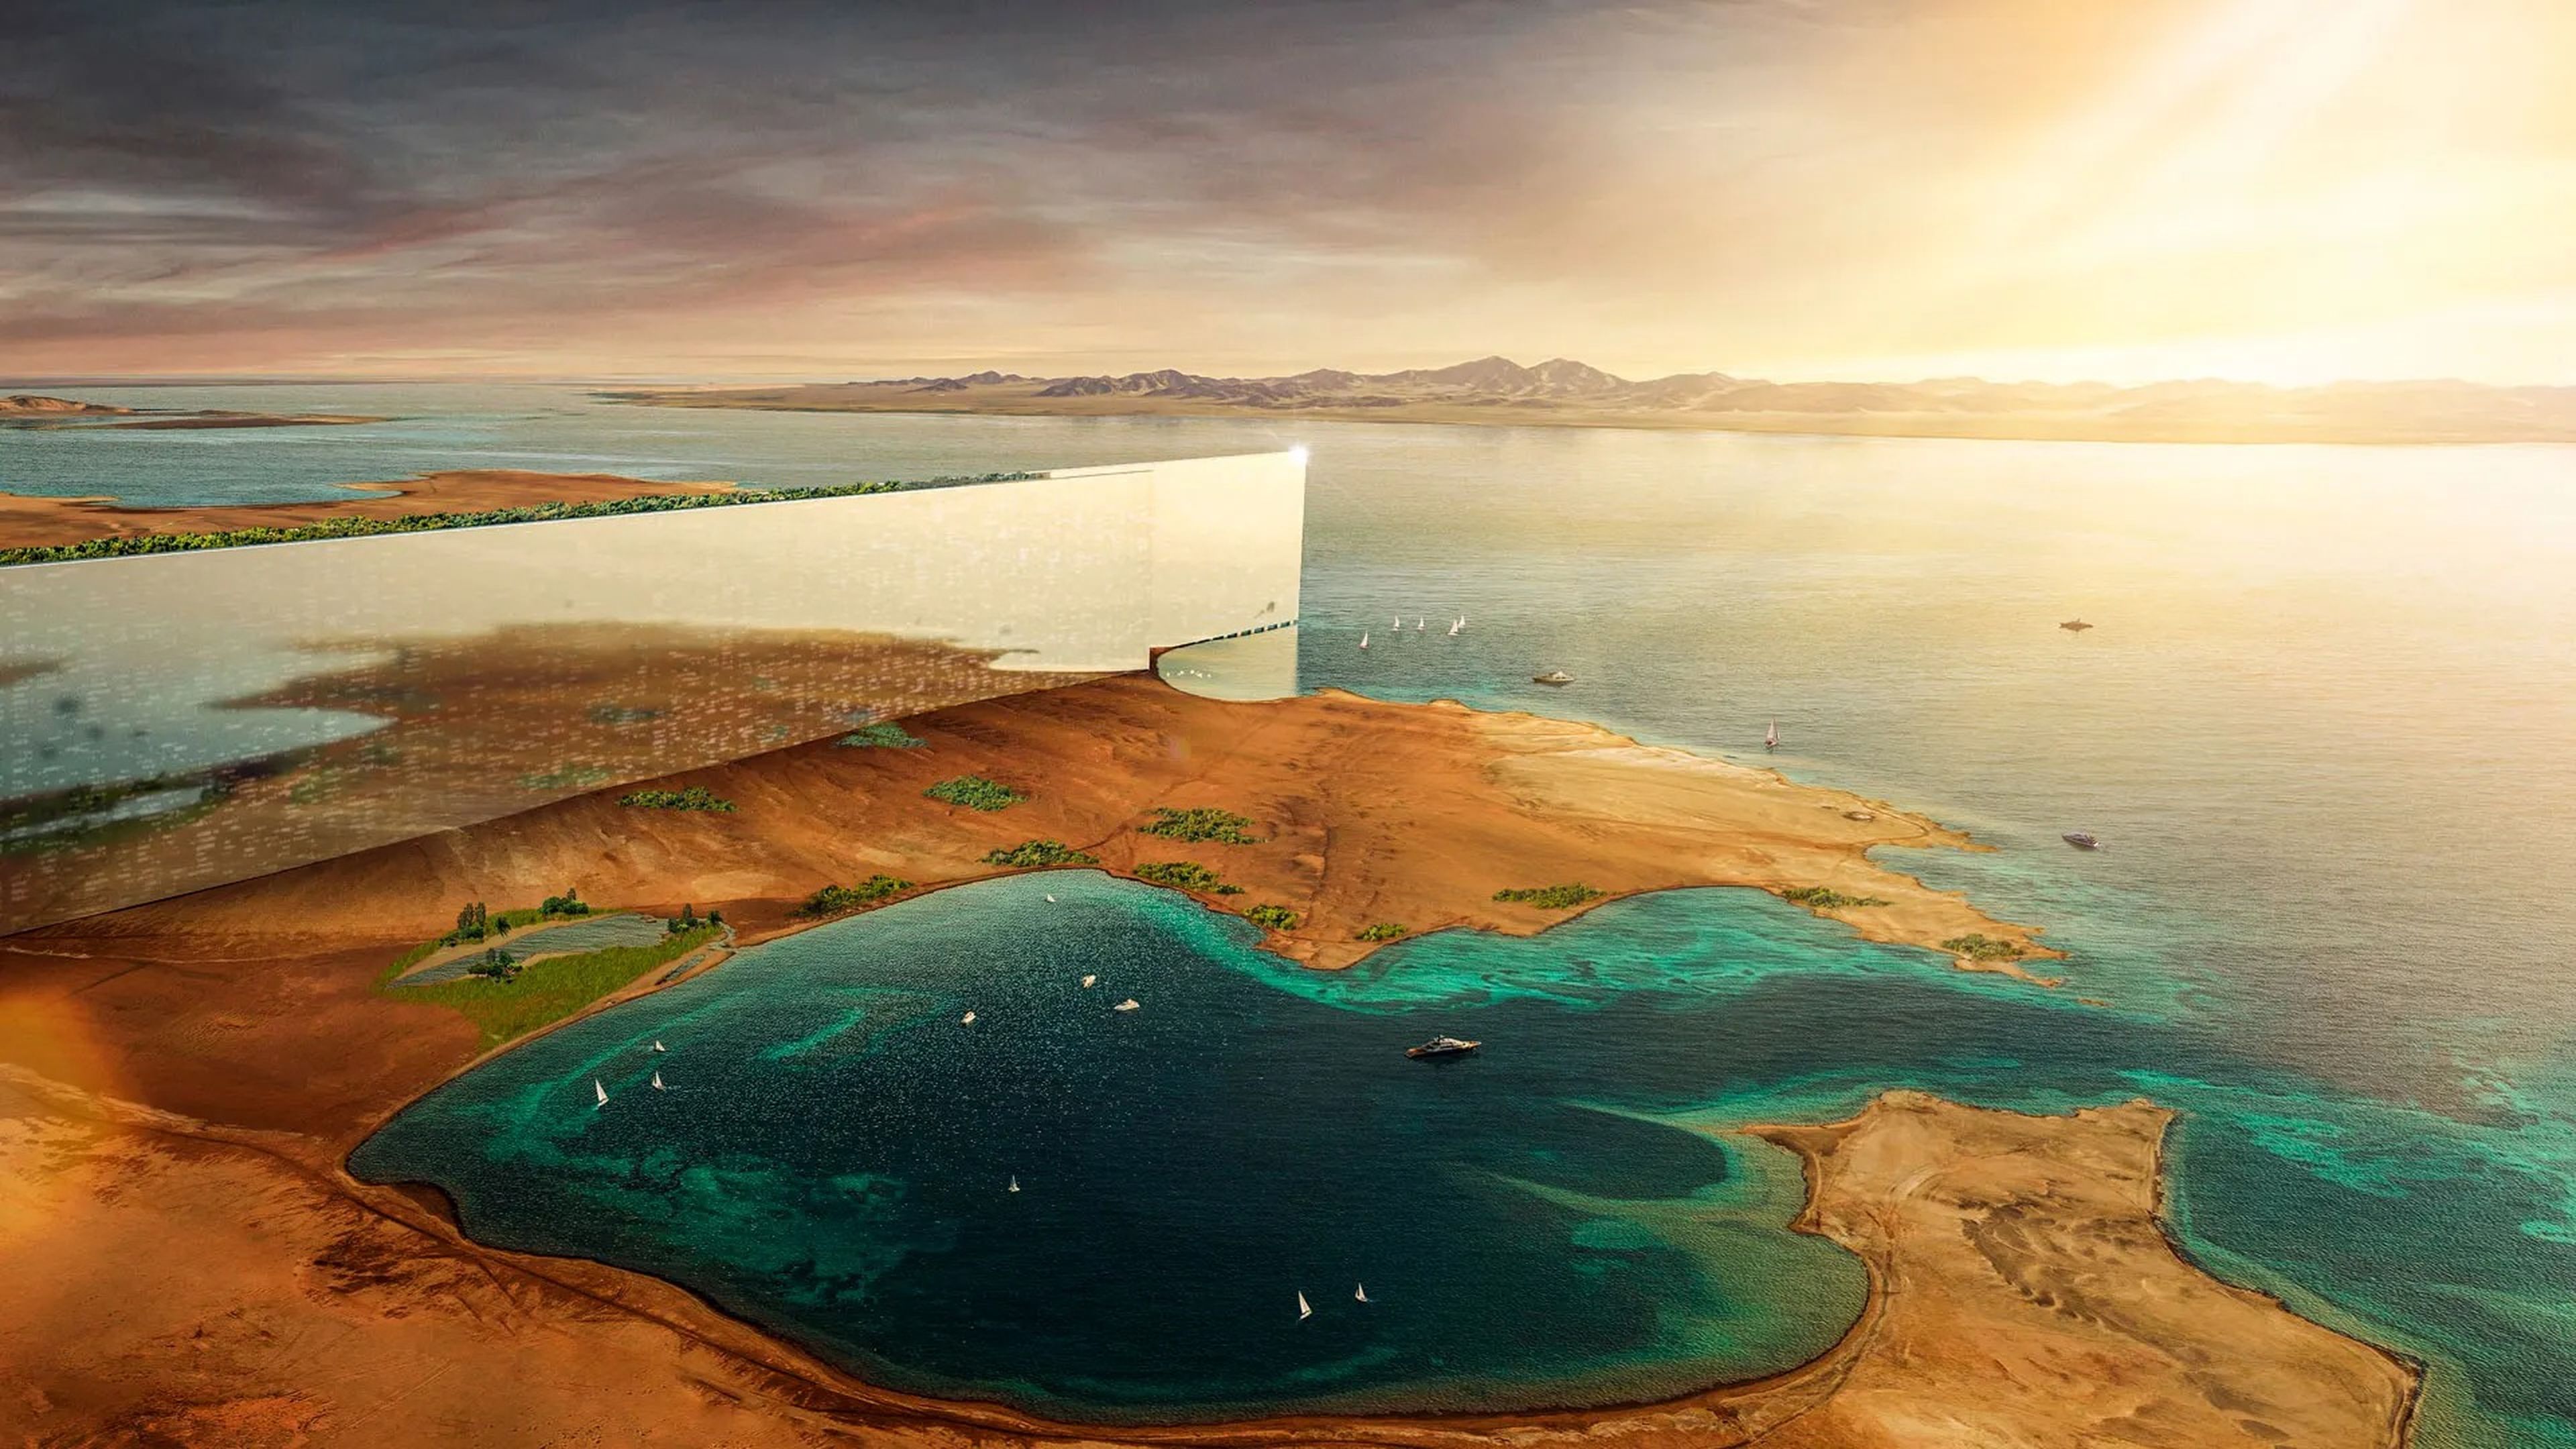 Una imagen conceptual del diseño previsto para The Line en Neom, Arabia Saudí, muestra una gran fachada de espejos que se extiende hacia el agua desde el desierto.